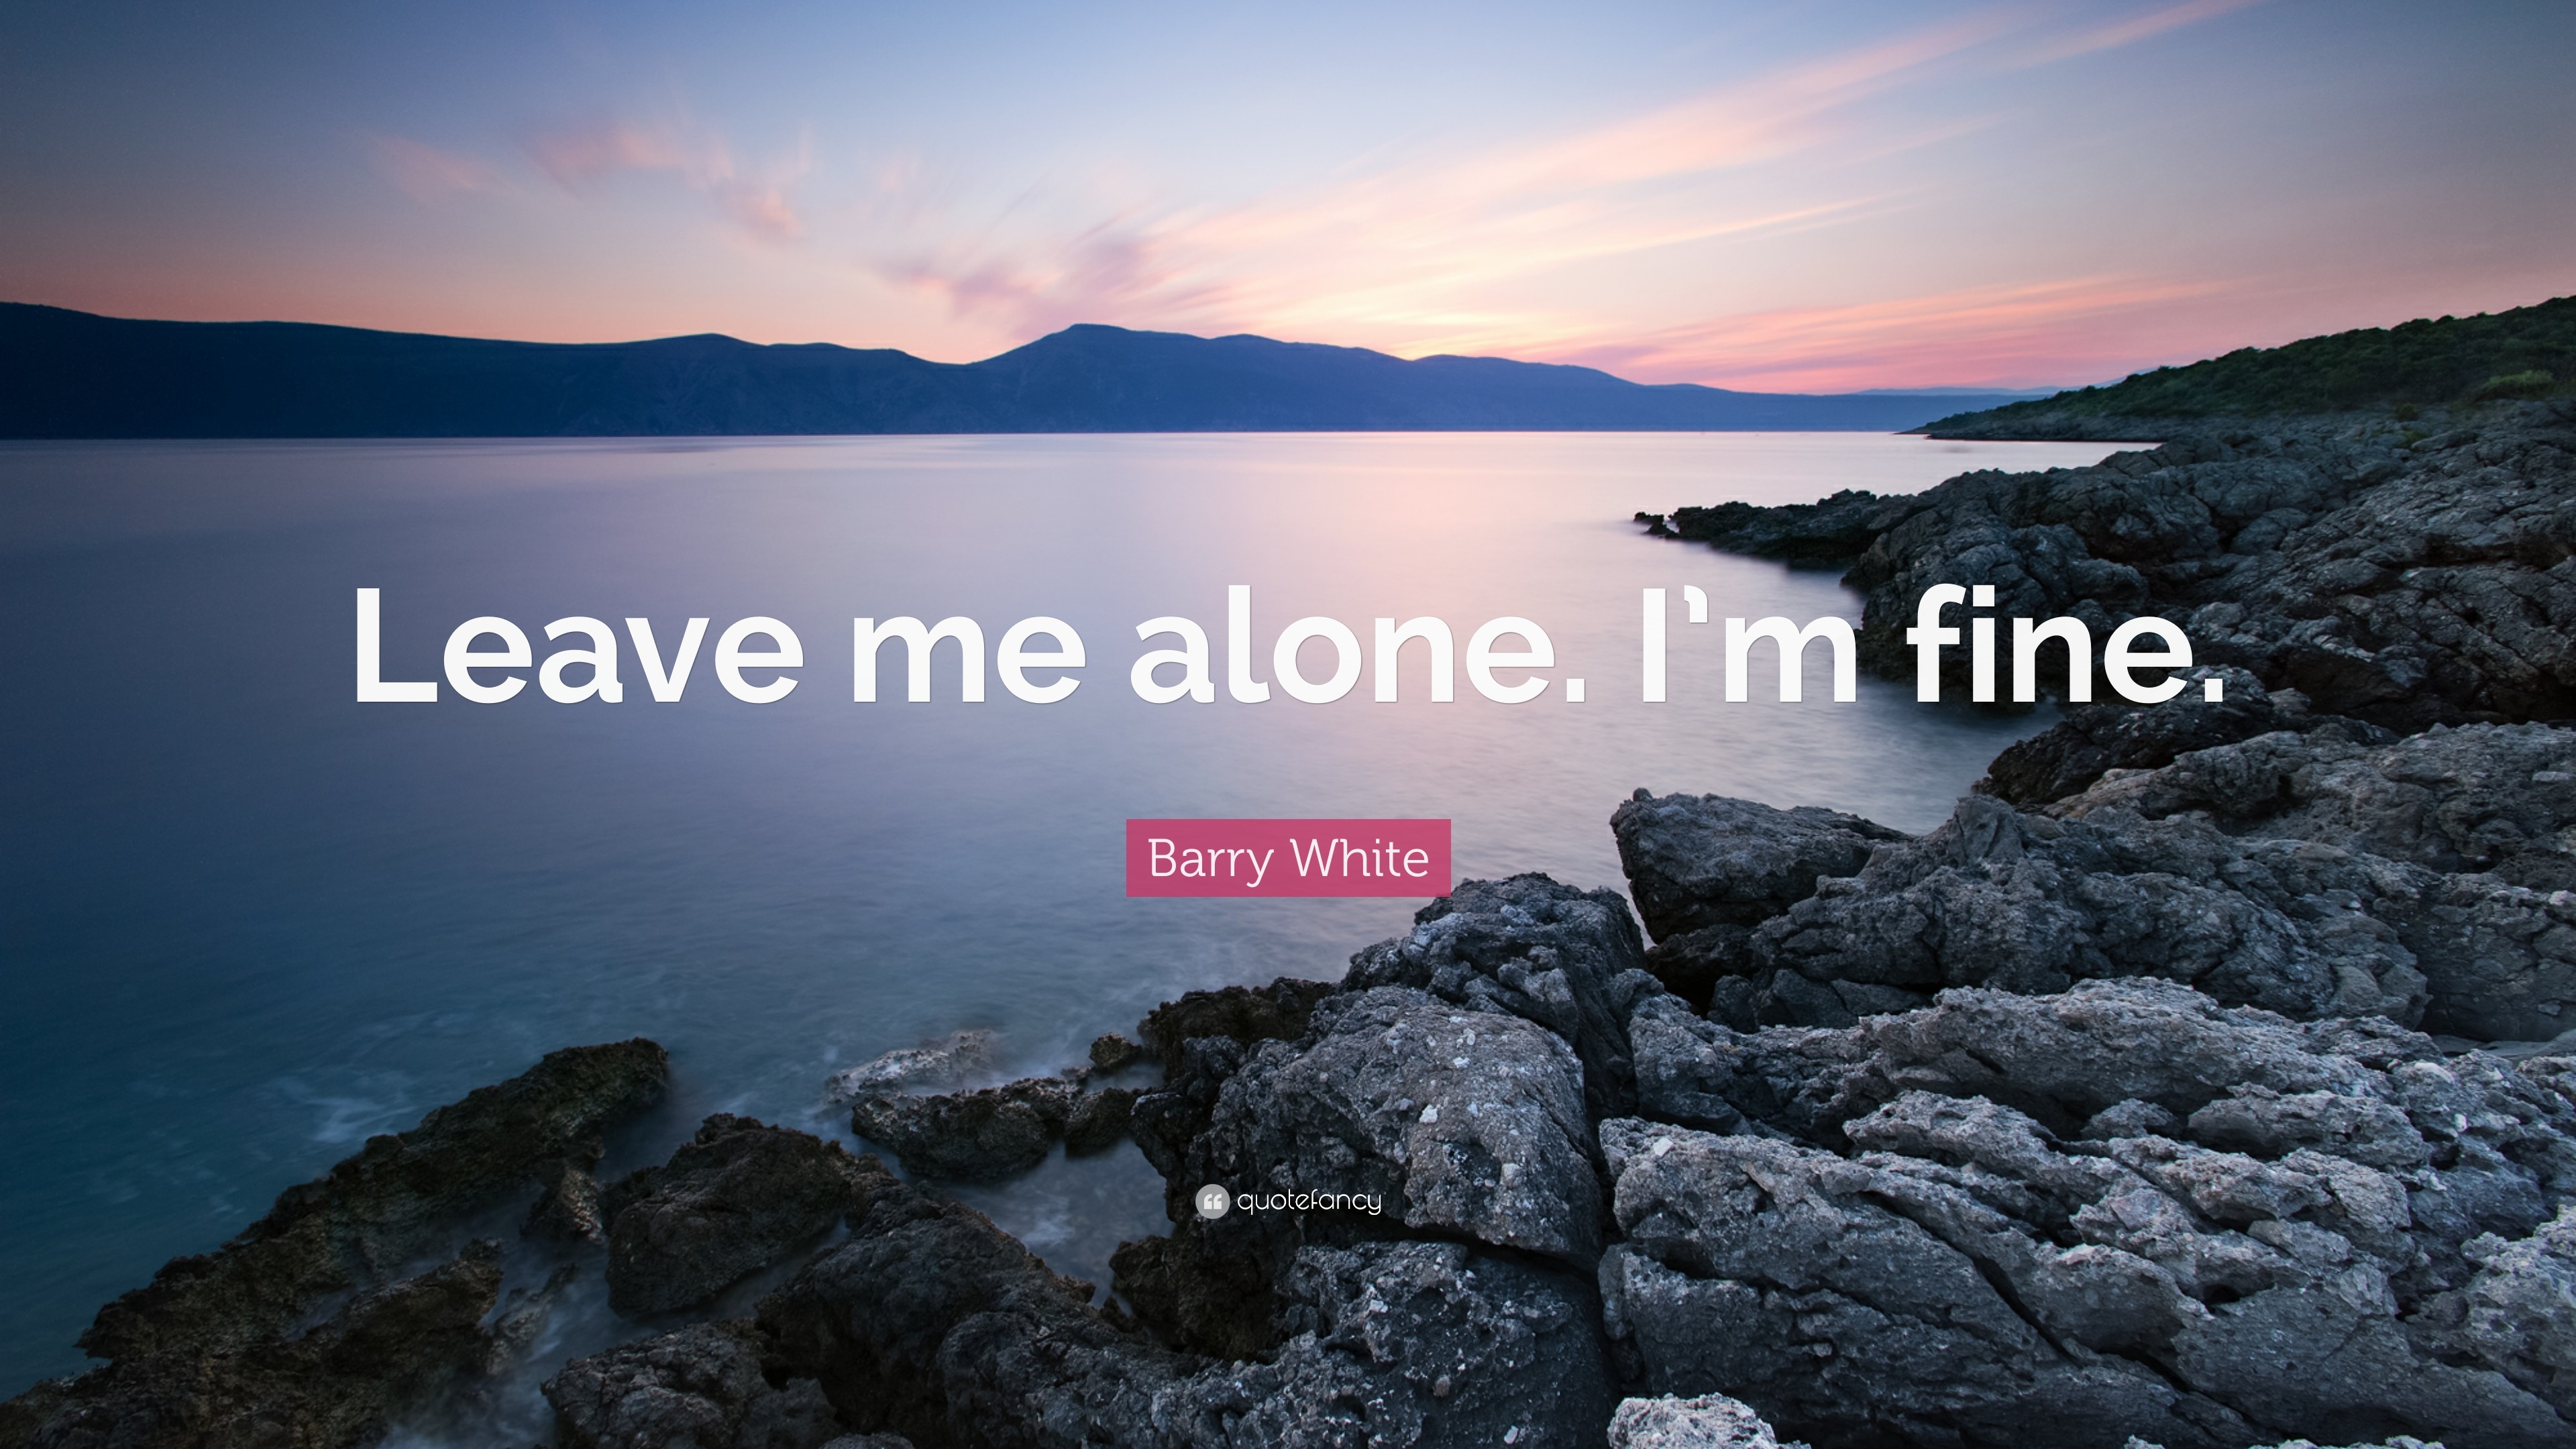 3840x2160 Barry White Quote: “Leave me alone. I'm fine.”